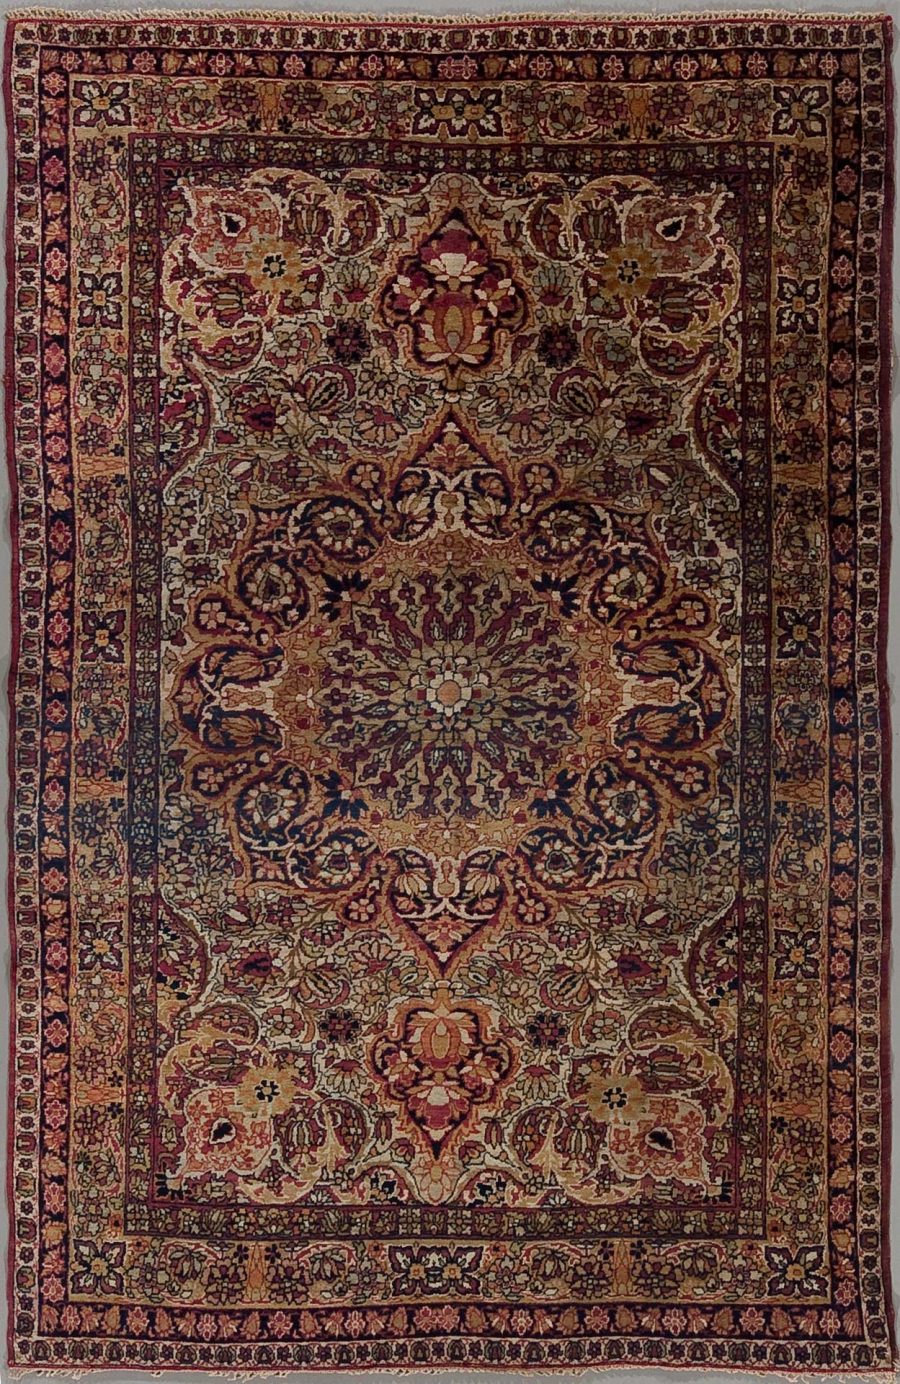 Detaillierter, handgeknüpfter orientalischer Teppich mit komplexem, symmetrischem Muster in Erdtönen, darunter Braun, Beige, Rot und Blau, eingerahmt von mehreren Bordüren mit floralen und geometrischen Motiven.